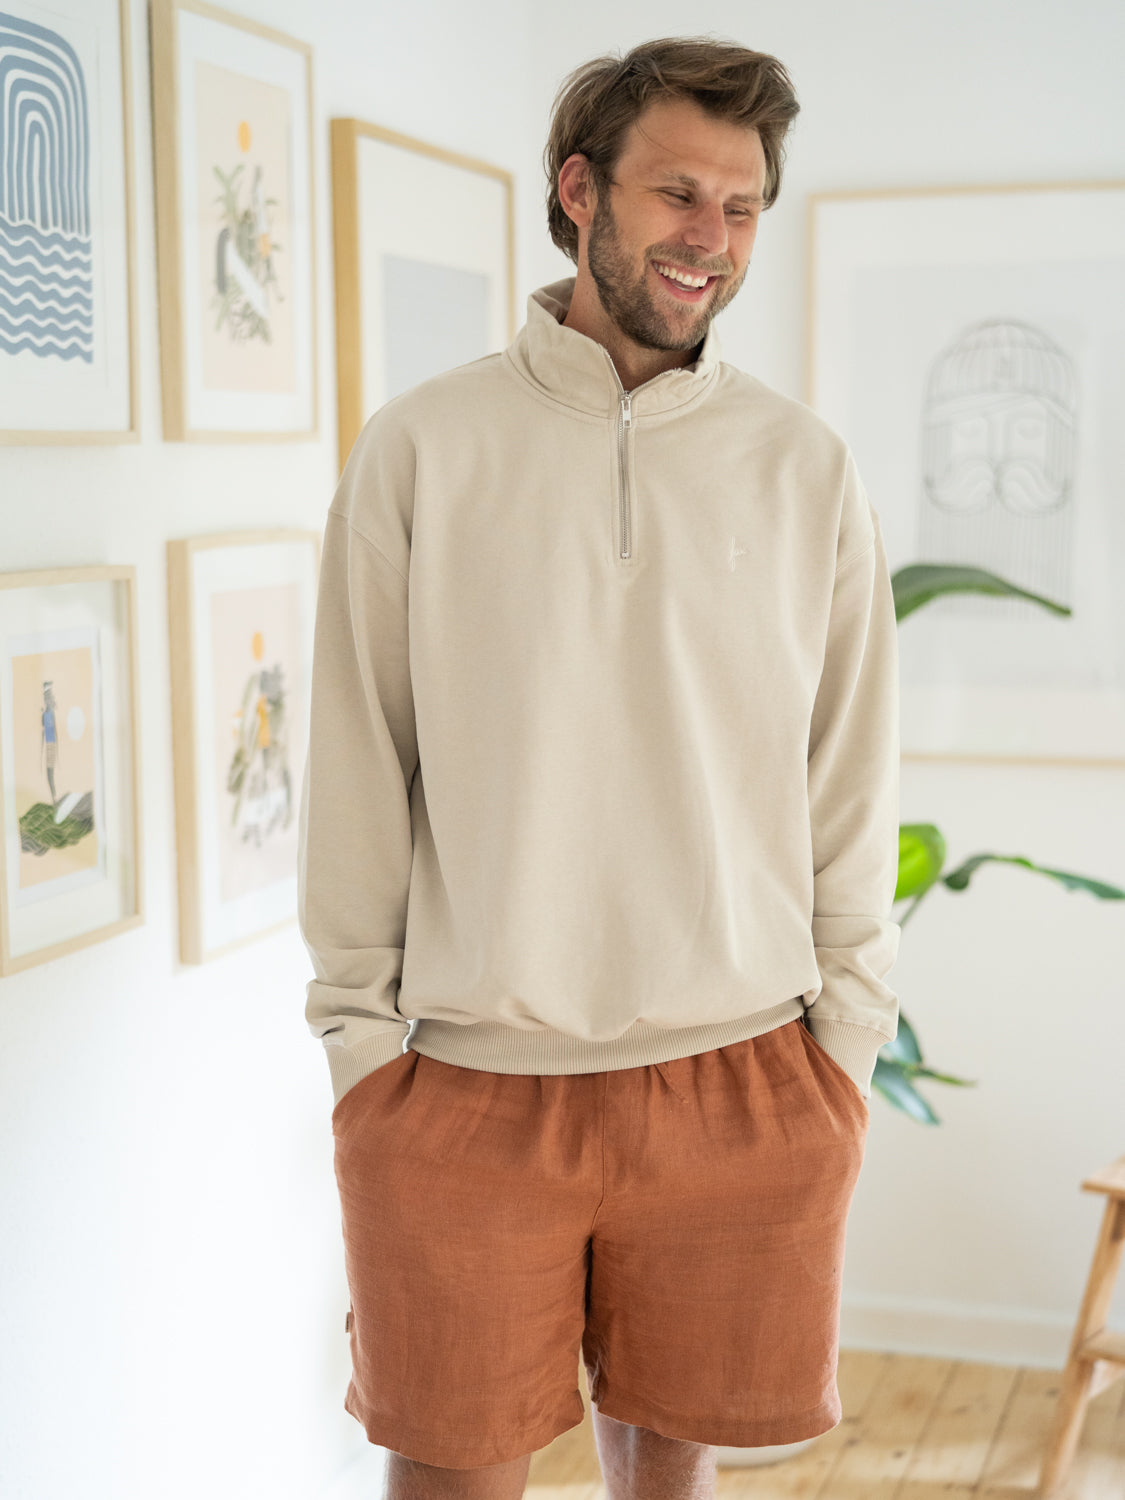 Philipp trägt unseren nachhaltigen fux Half Zip Sweater in sand aus 100% Biobaumwolle.